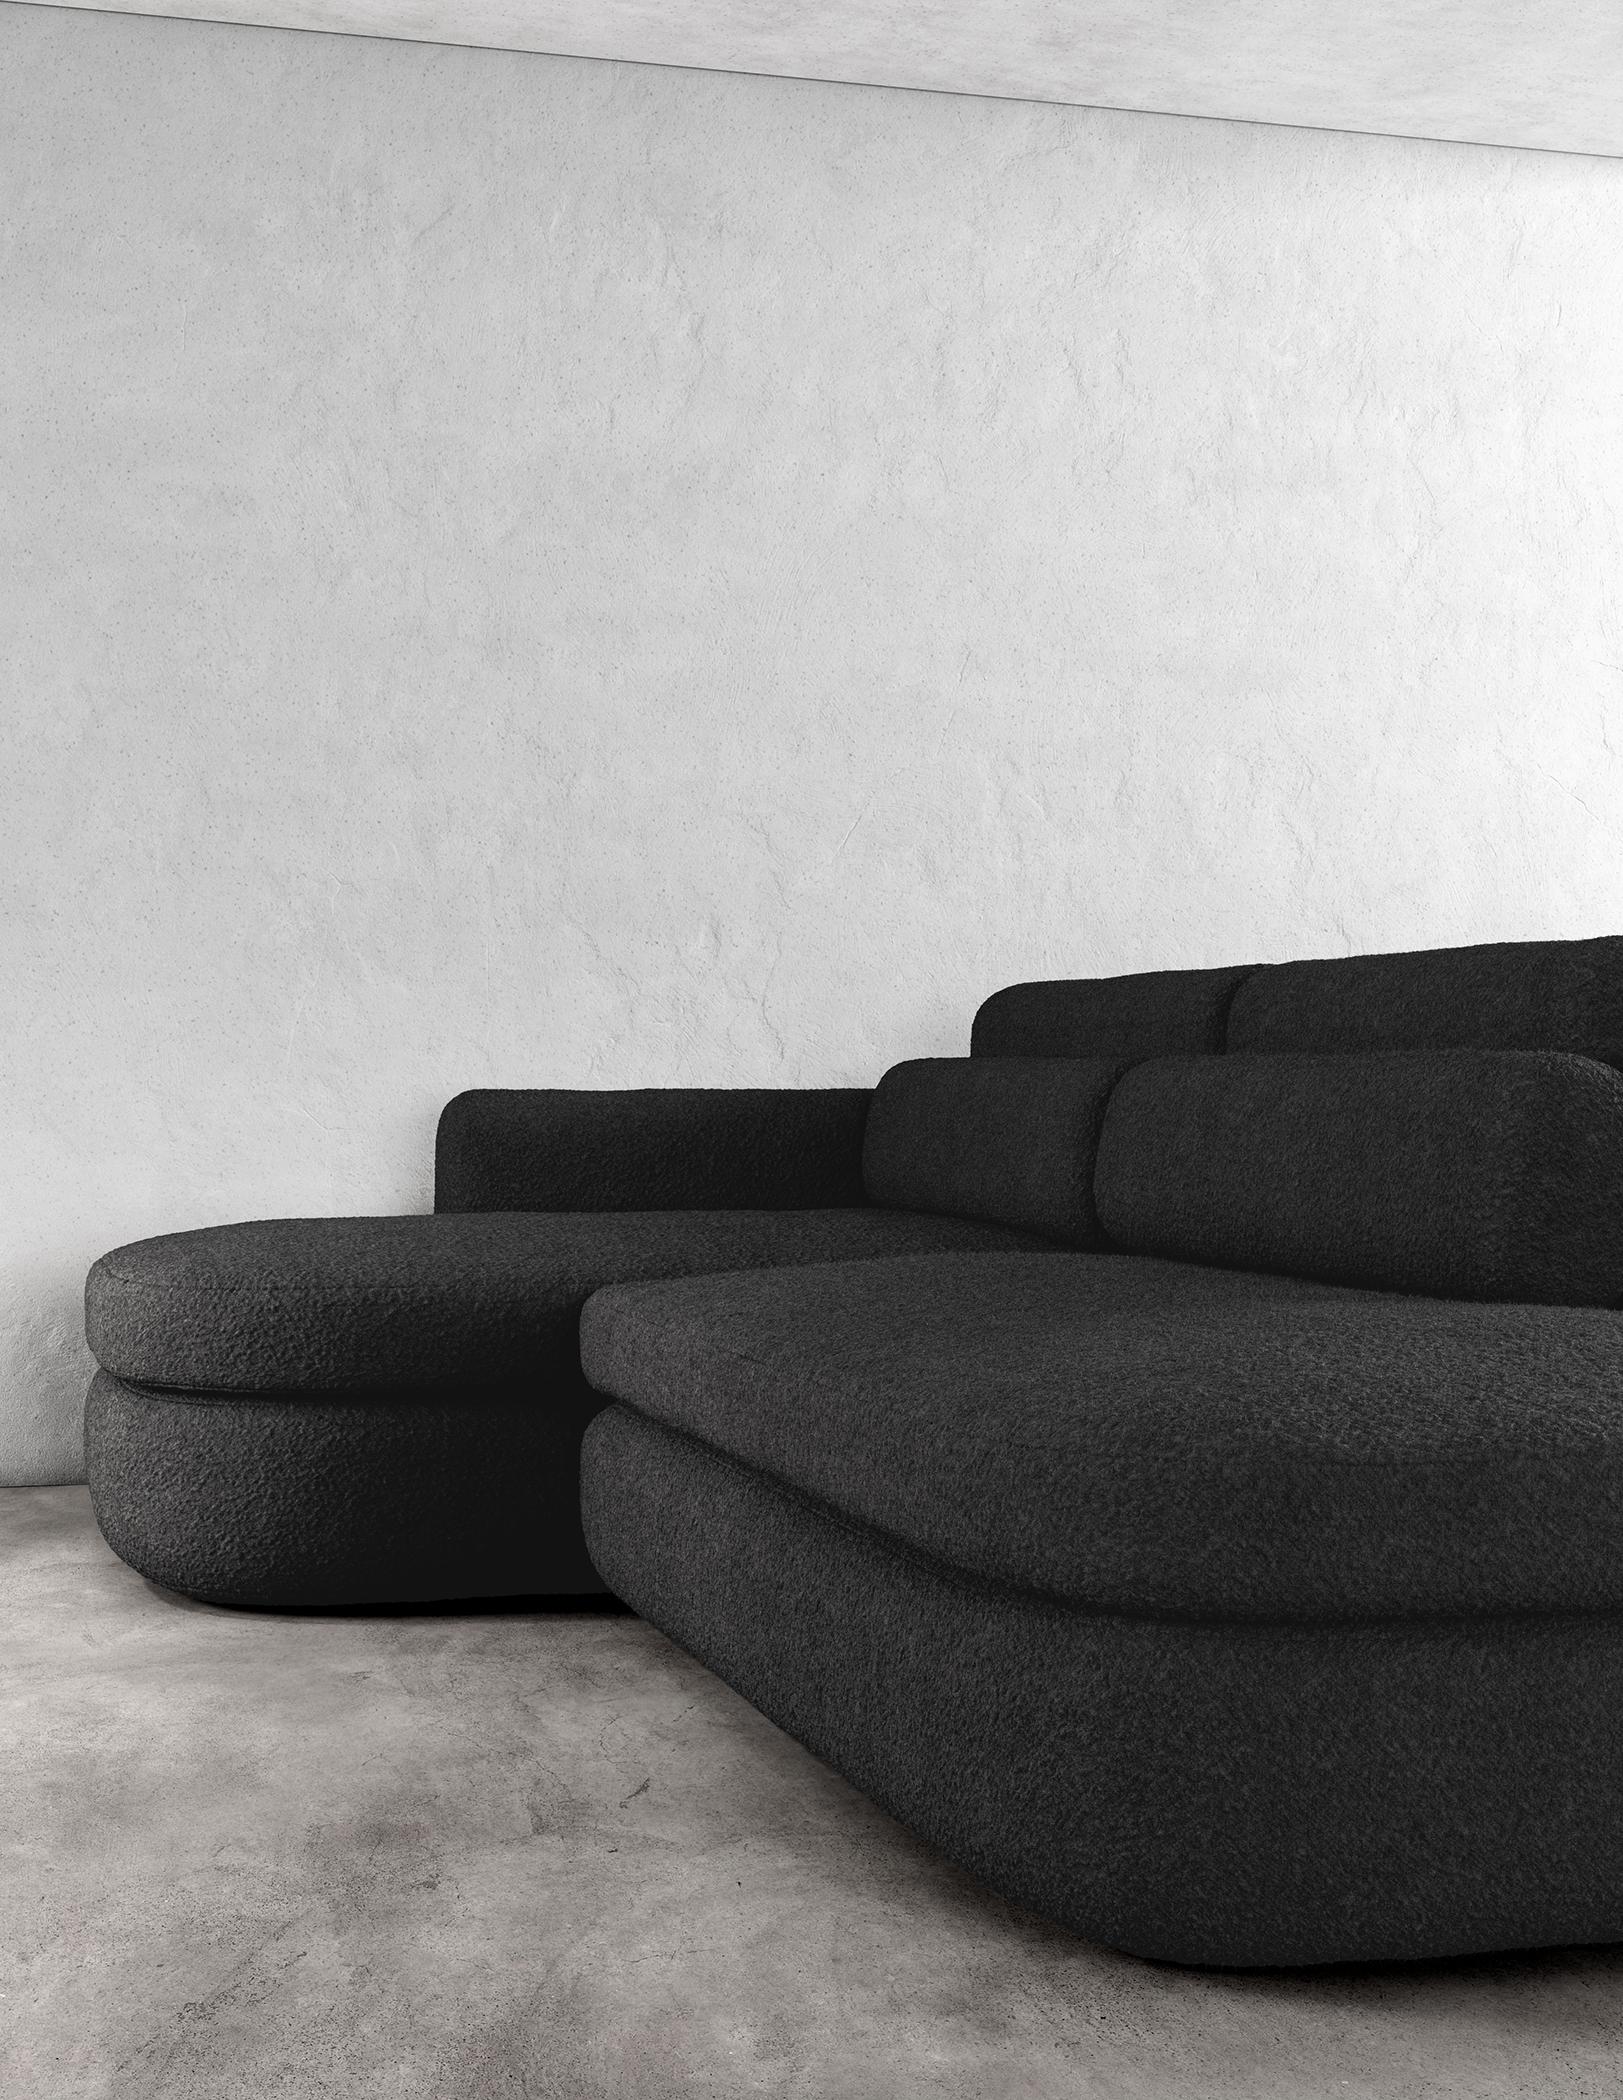 ASYM SECTIONAL - Canapé sectionnel asymétrique moderne en bouclette noire

Le canapé sectionnel Asym est un meuble étonnant, à la fois sophistiqué et simple, doté d'éléments de design asymétriques qui créent une esthétique unique et moderne. La